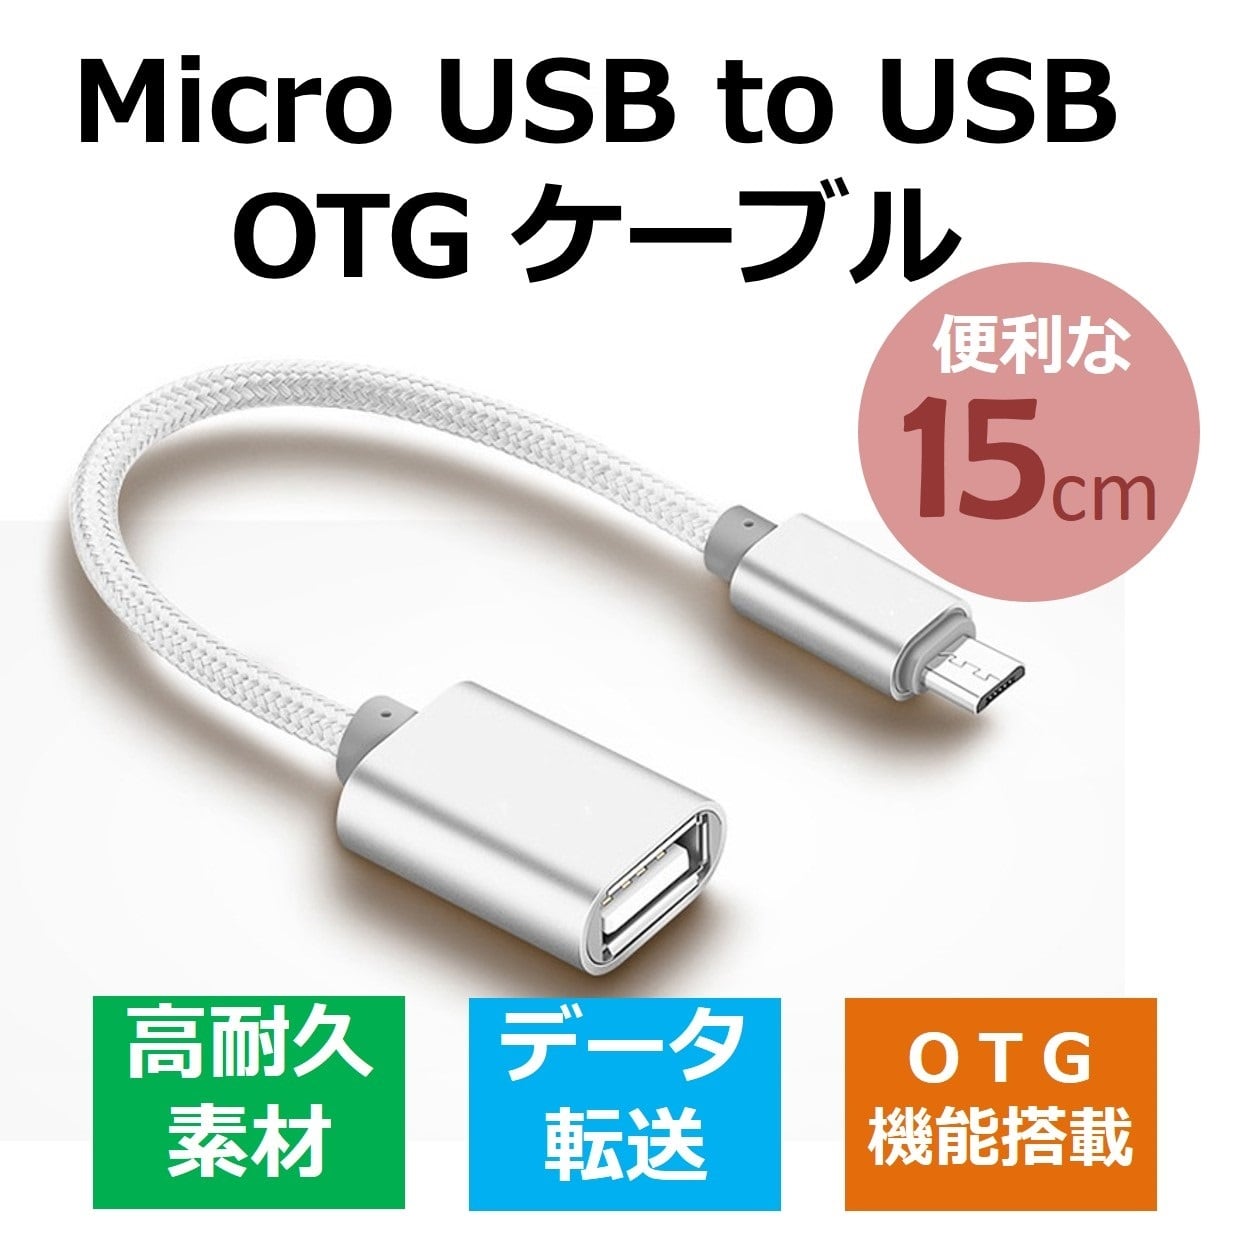 若者の大愛商品 USB Type-A to Type-C 変換ケーブル OTG対応 シルバー